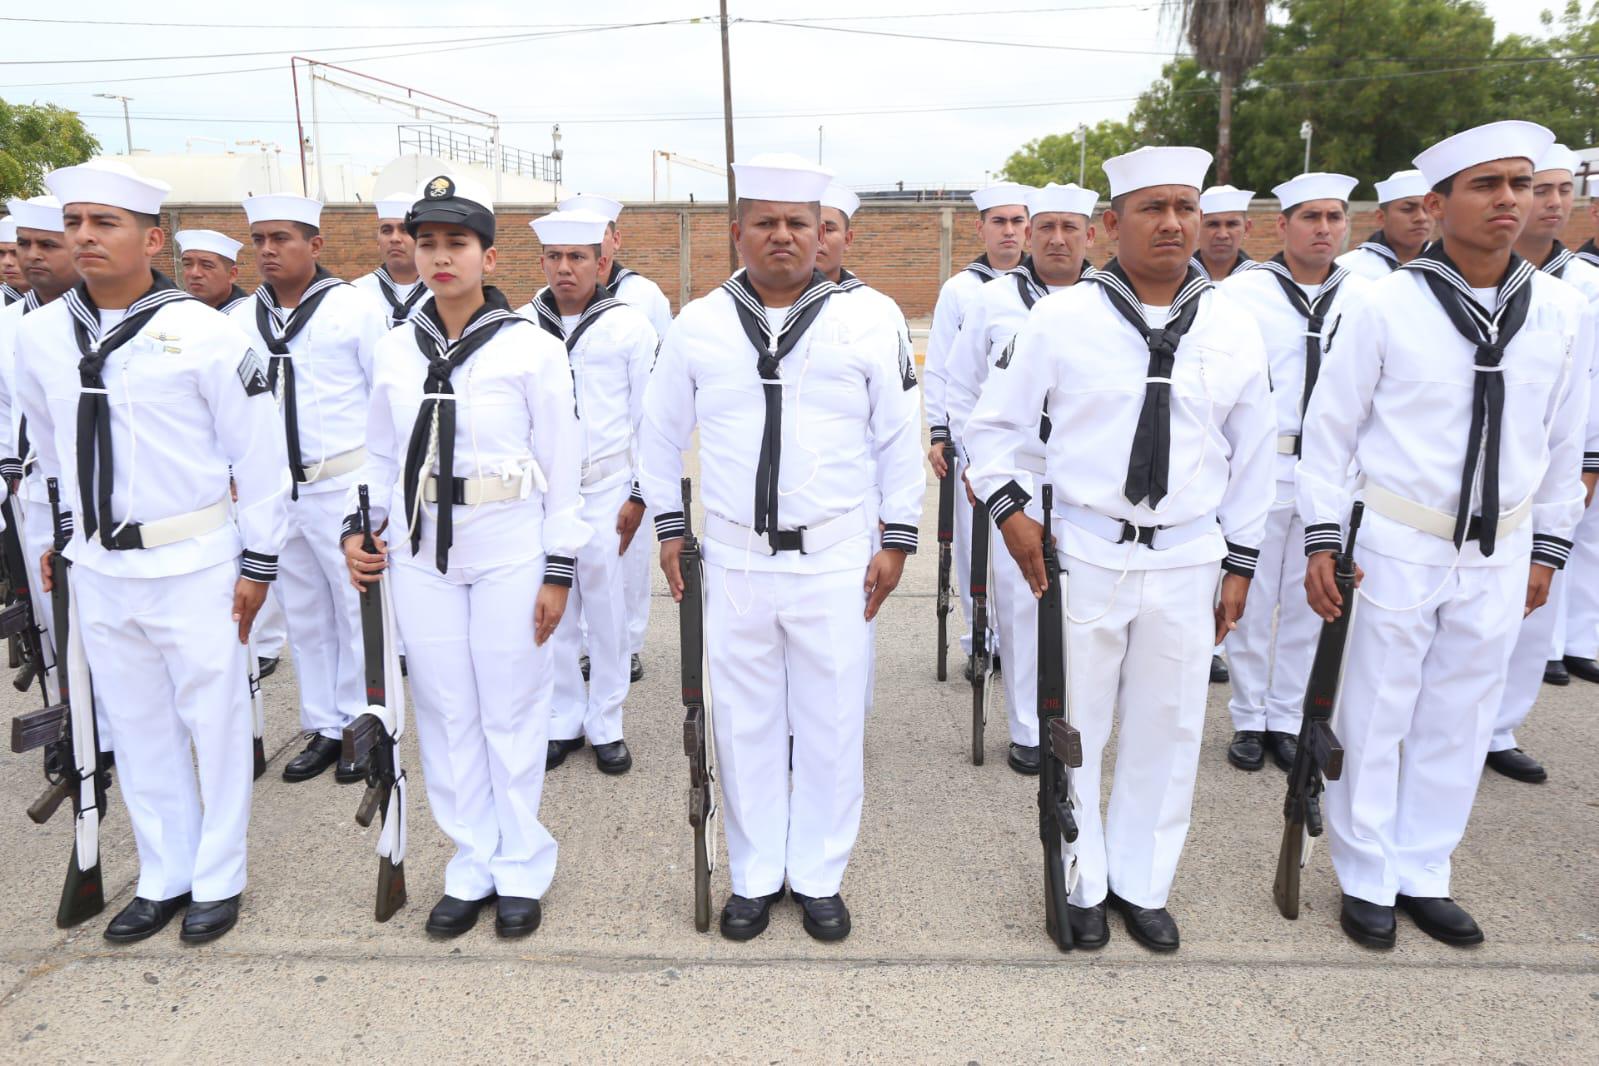 $!Resaltan en el Día de la Marina soberanía de mares en México